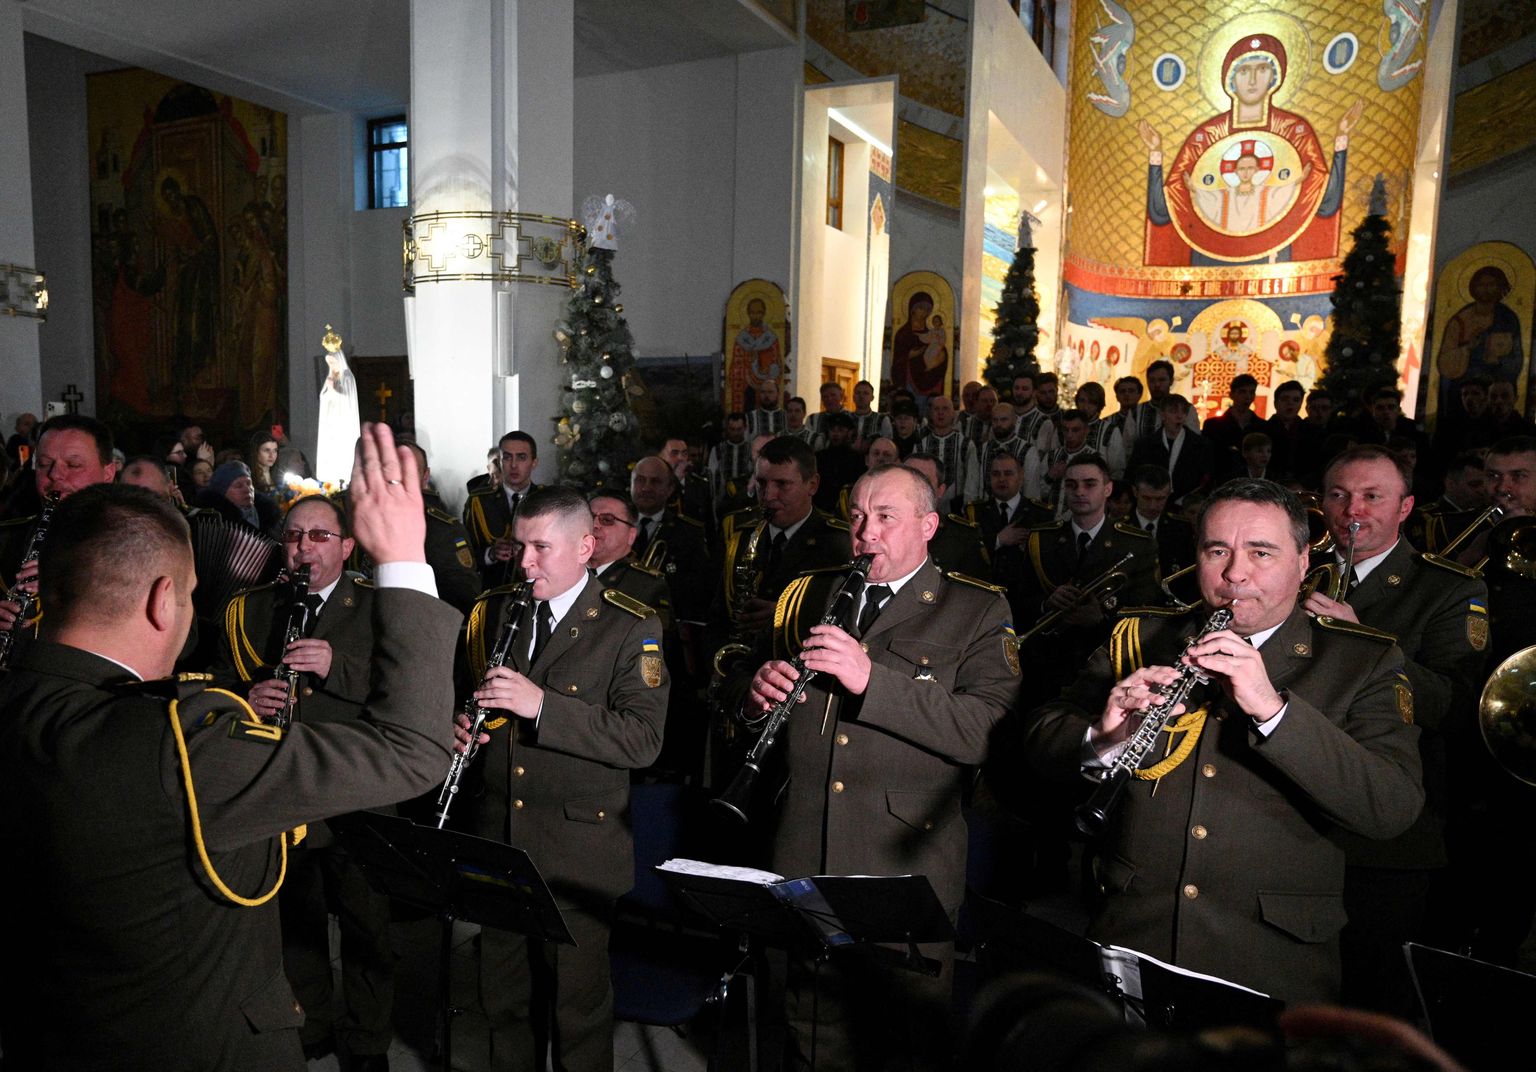 Militārā orķestra dalībnieki uzstājas Ukrainas Vienotības dienas svinībās Svētās Jaunavas dzimšanas baznīcā pilsētā Ļvivā, šīgada 22. janvārī